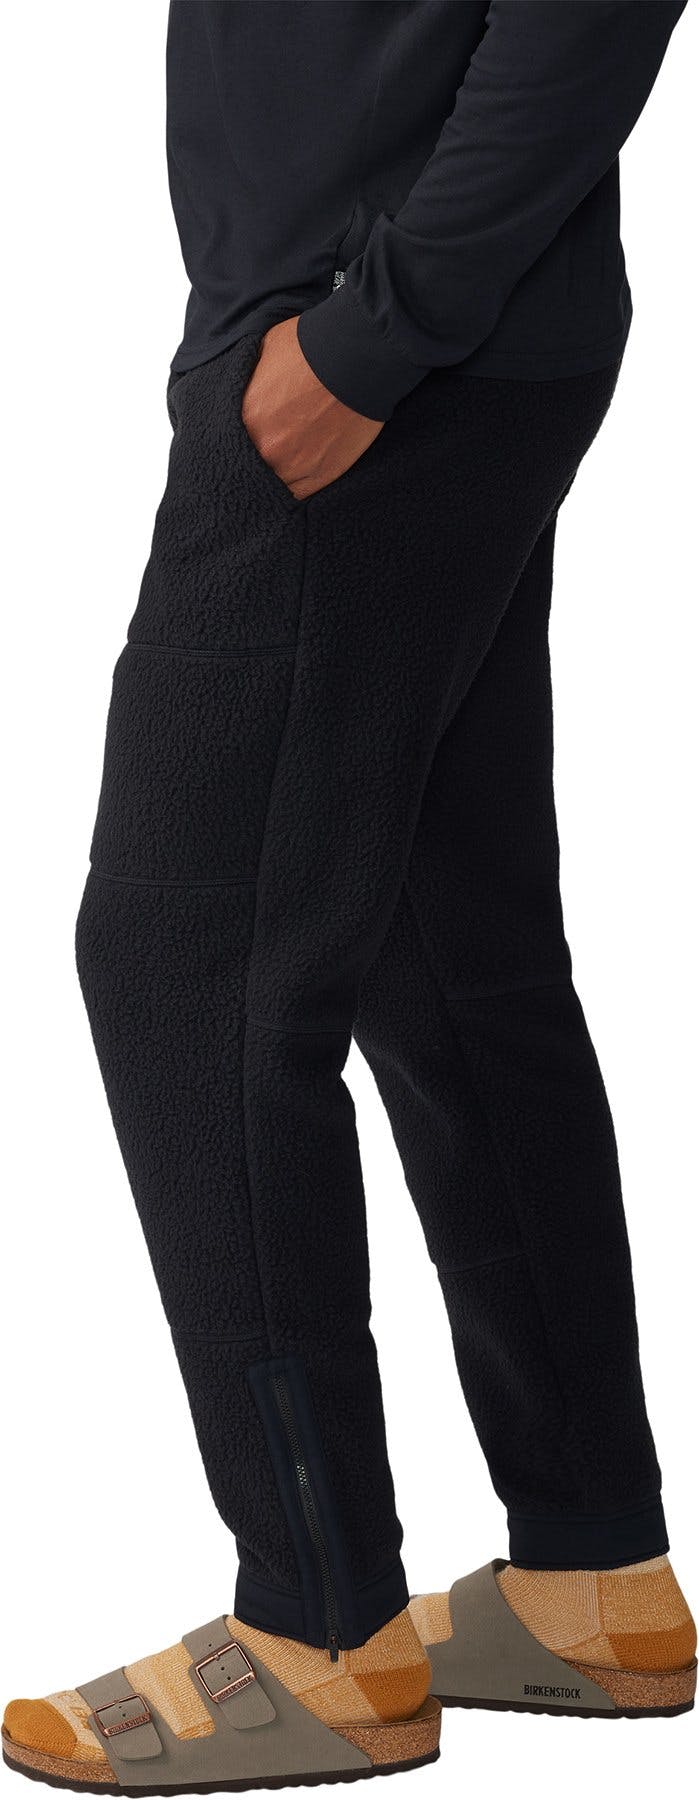 Numéro de l'image de la galerie de produits 4 pour le produit Pantalon de jogging HiCamp - Homme